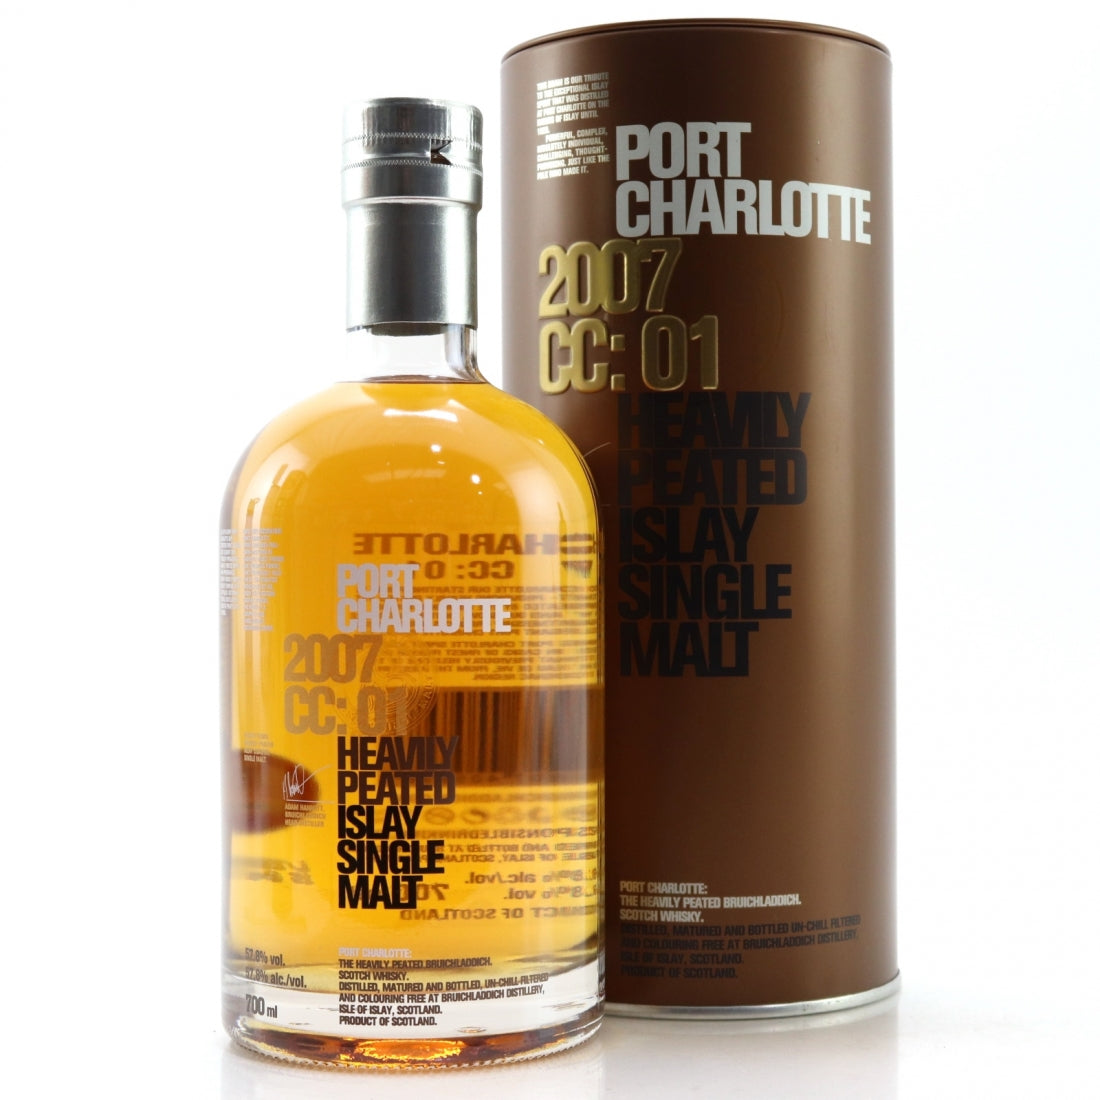 Port Charlotte Port Charlotte Scotch 750 ml - The Hut Liquor Store